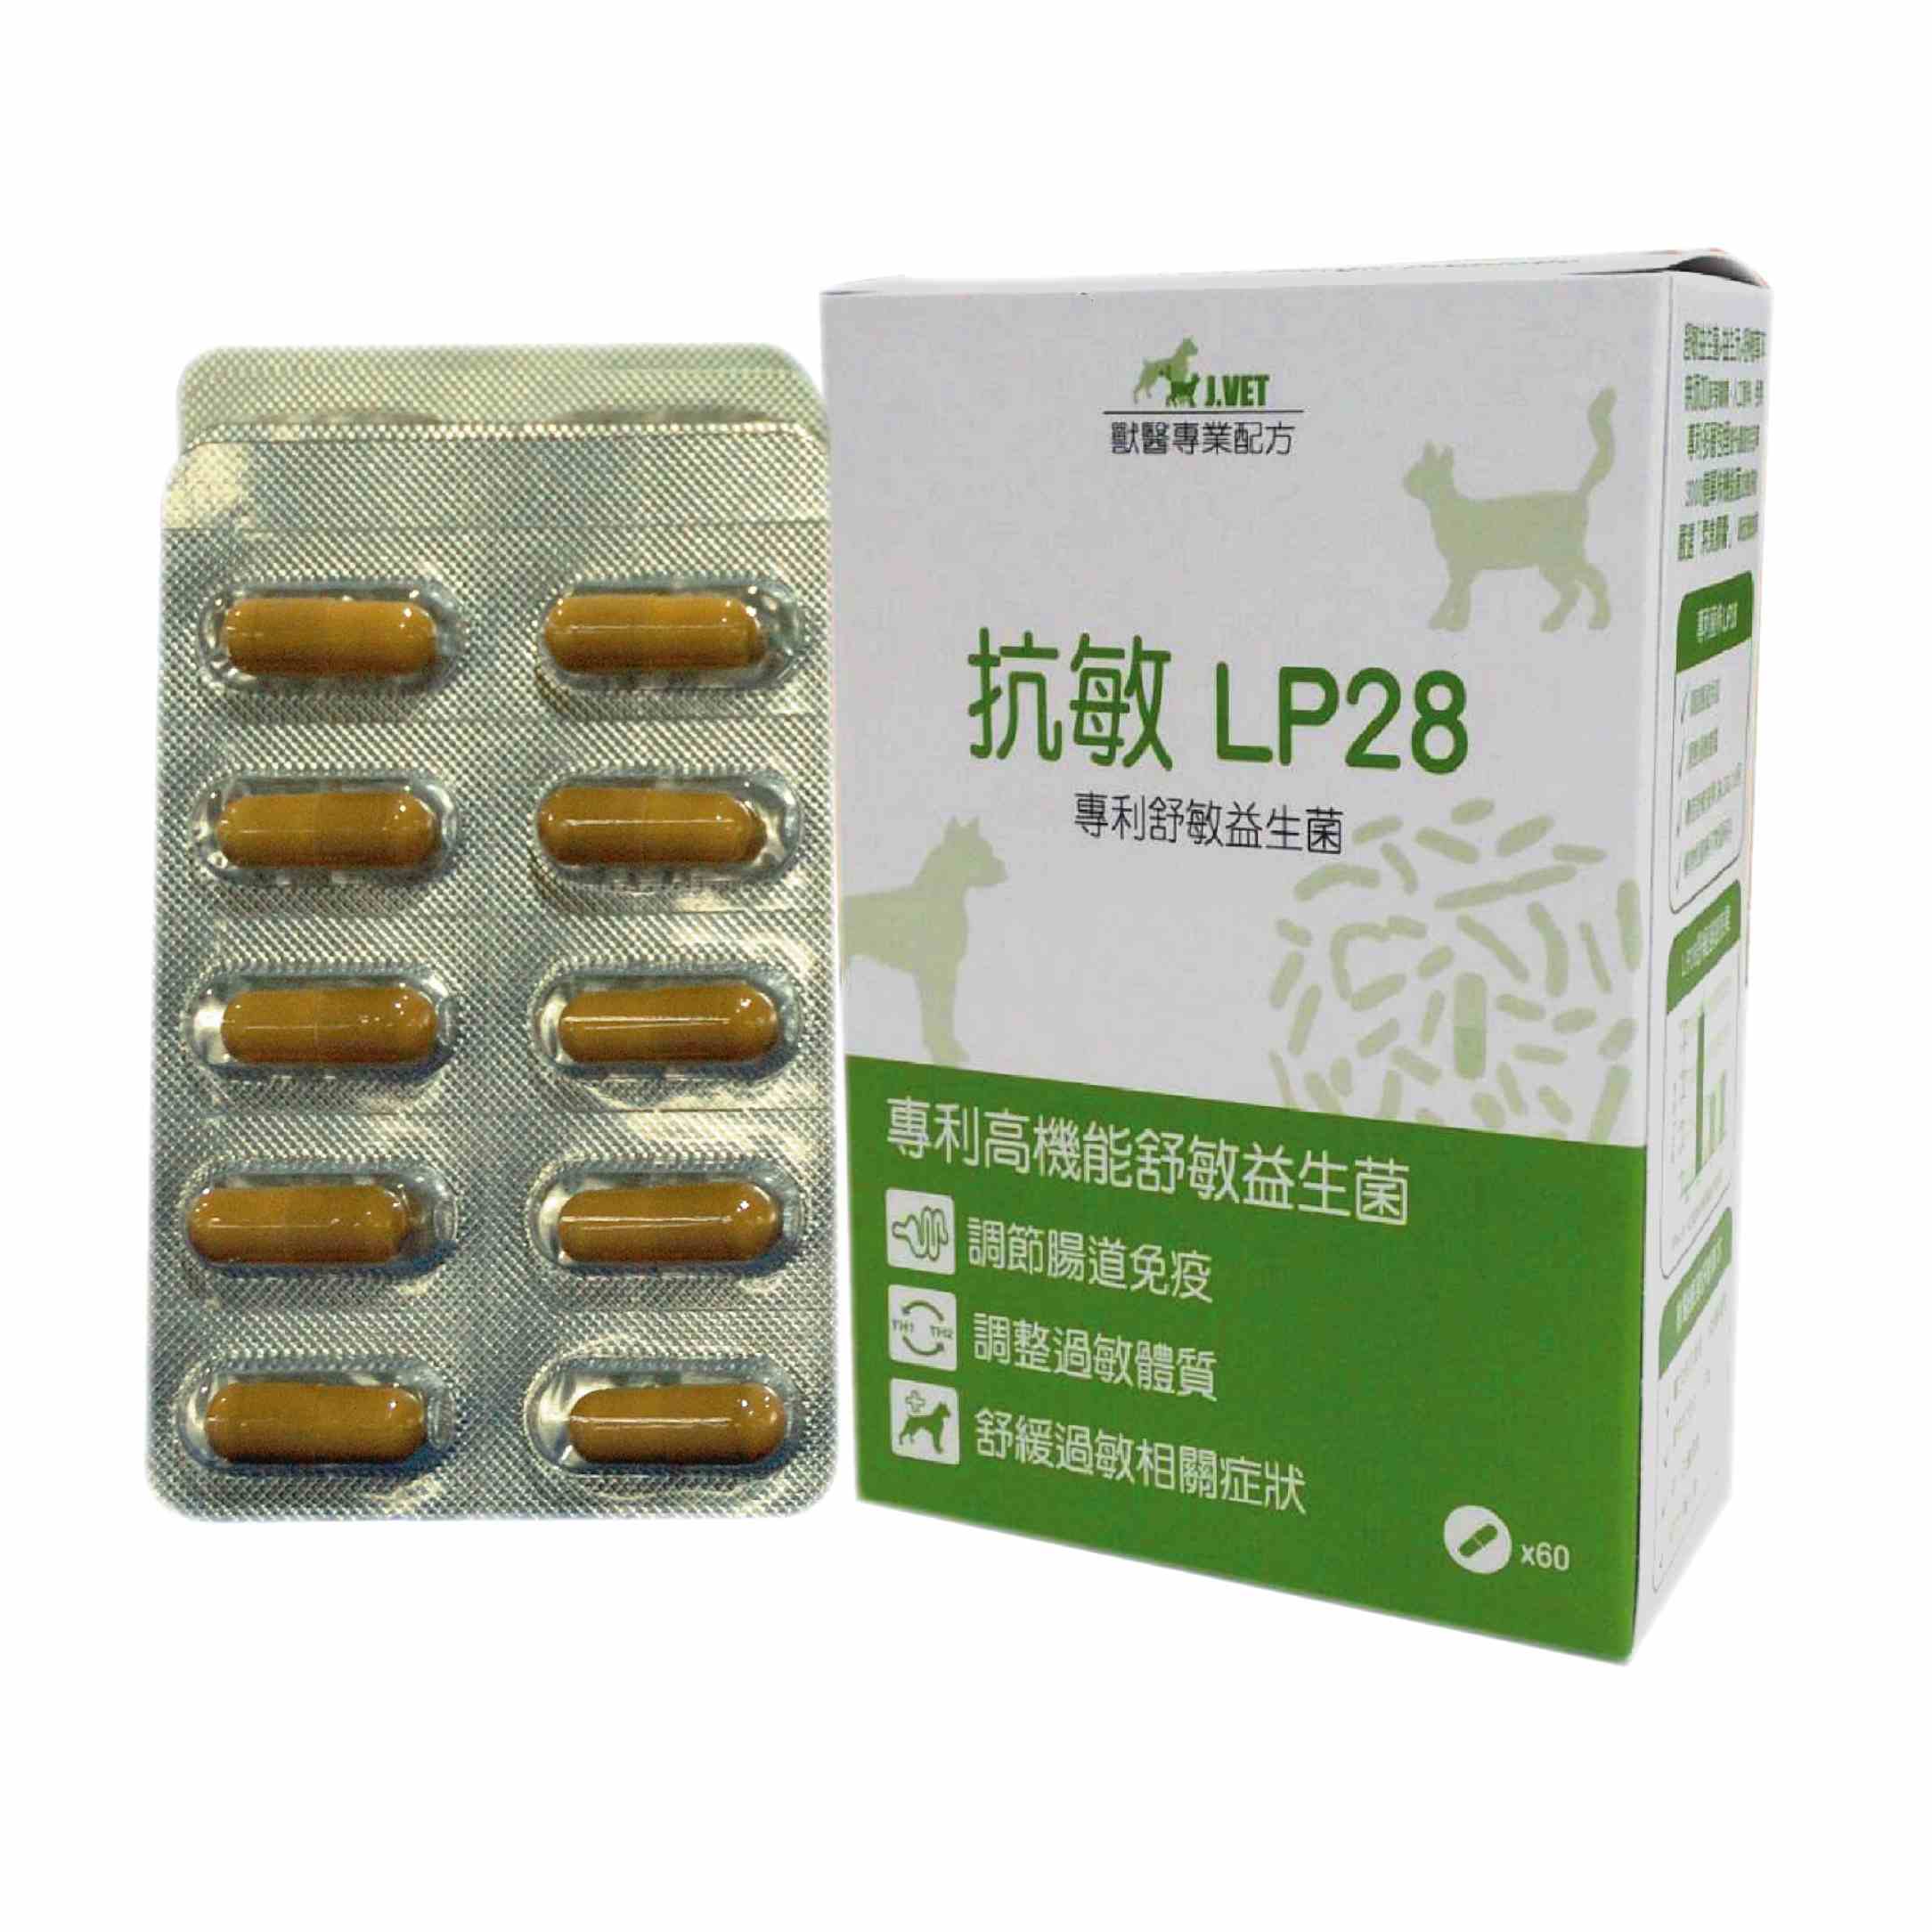 抗敏LP28
Anti-allergy LP28